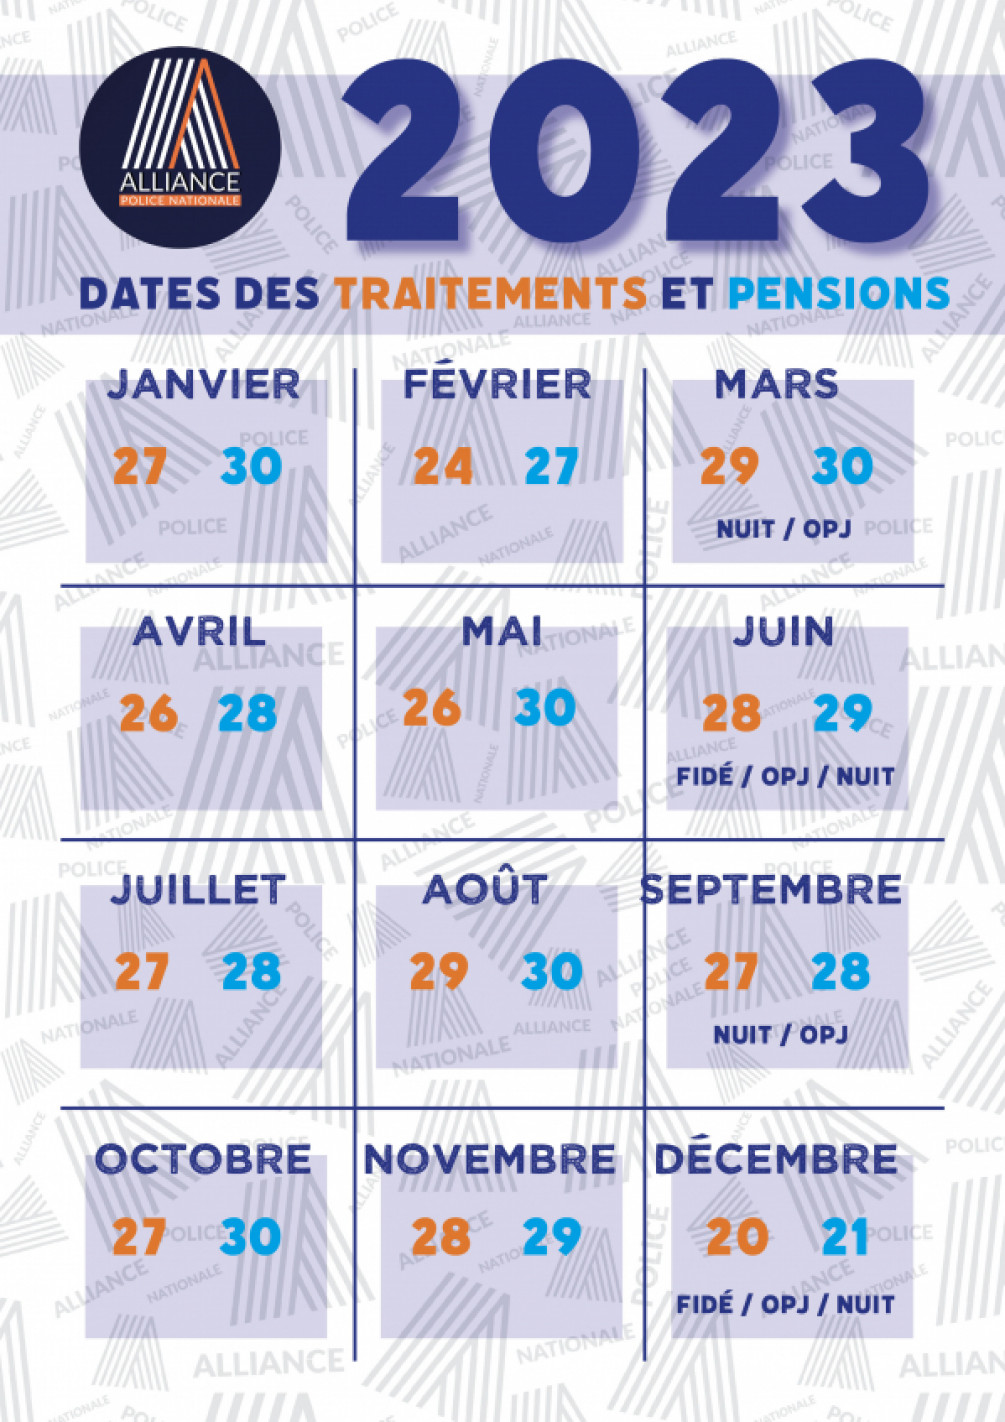 Dates des traitements et pensions 2023